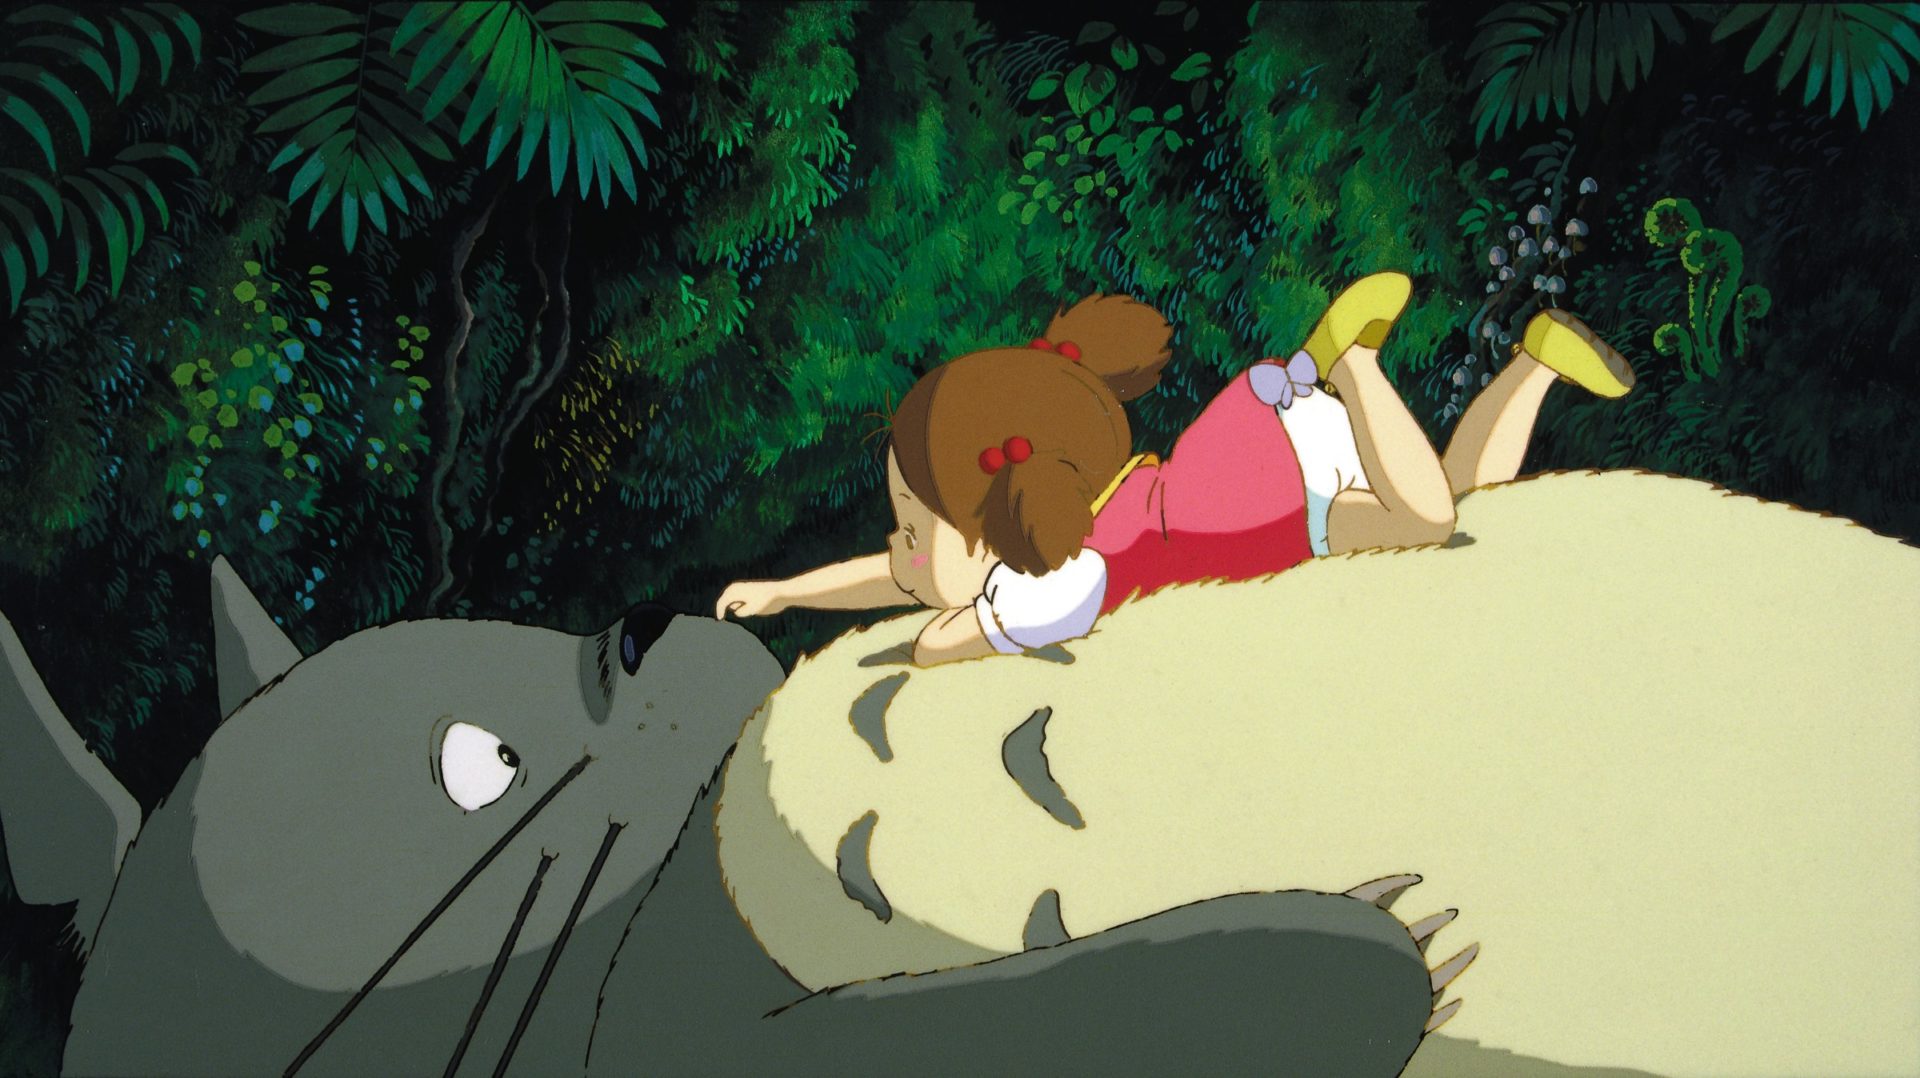 吉卜力重返大銀幕首部作品為宮崎駿經典之作《龍貓》　帶觀眾找回最初的感動